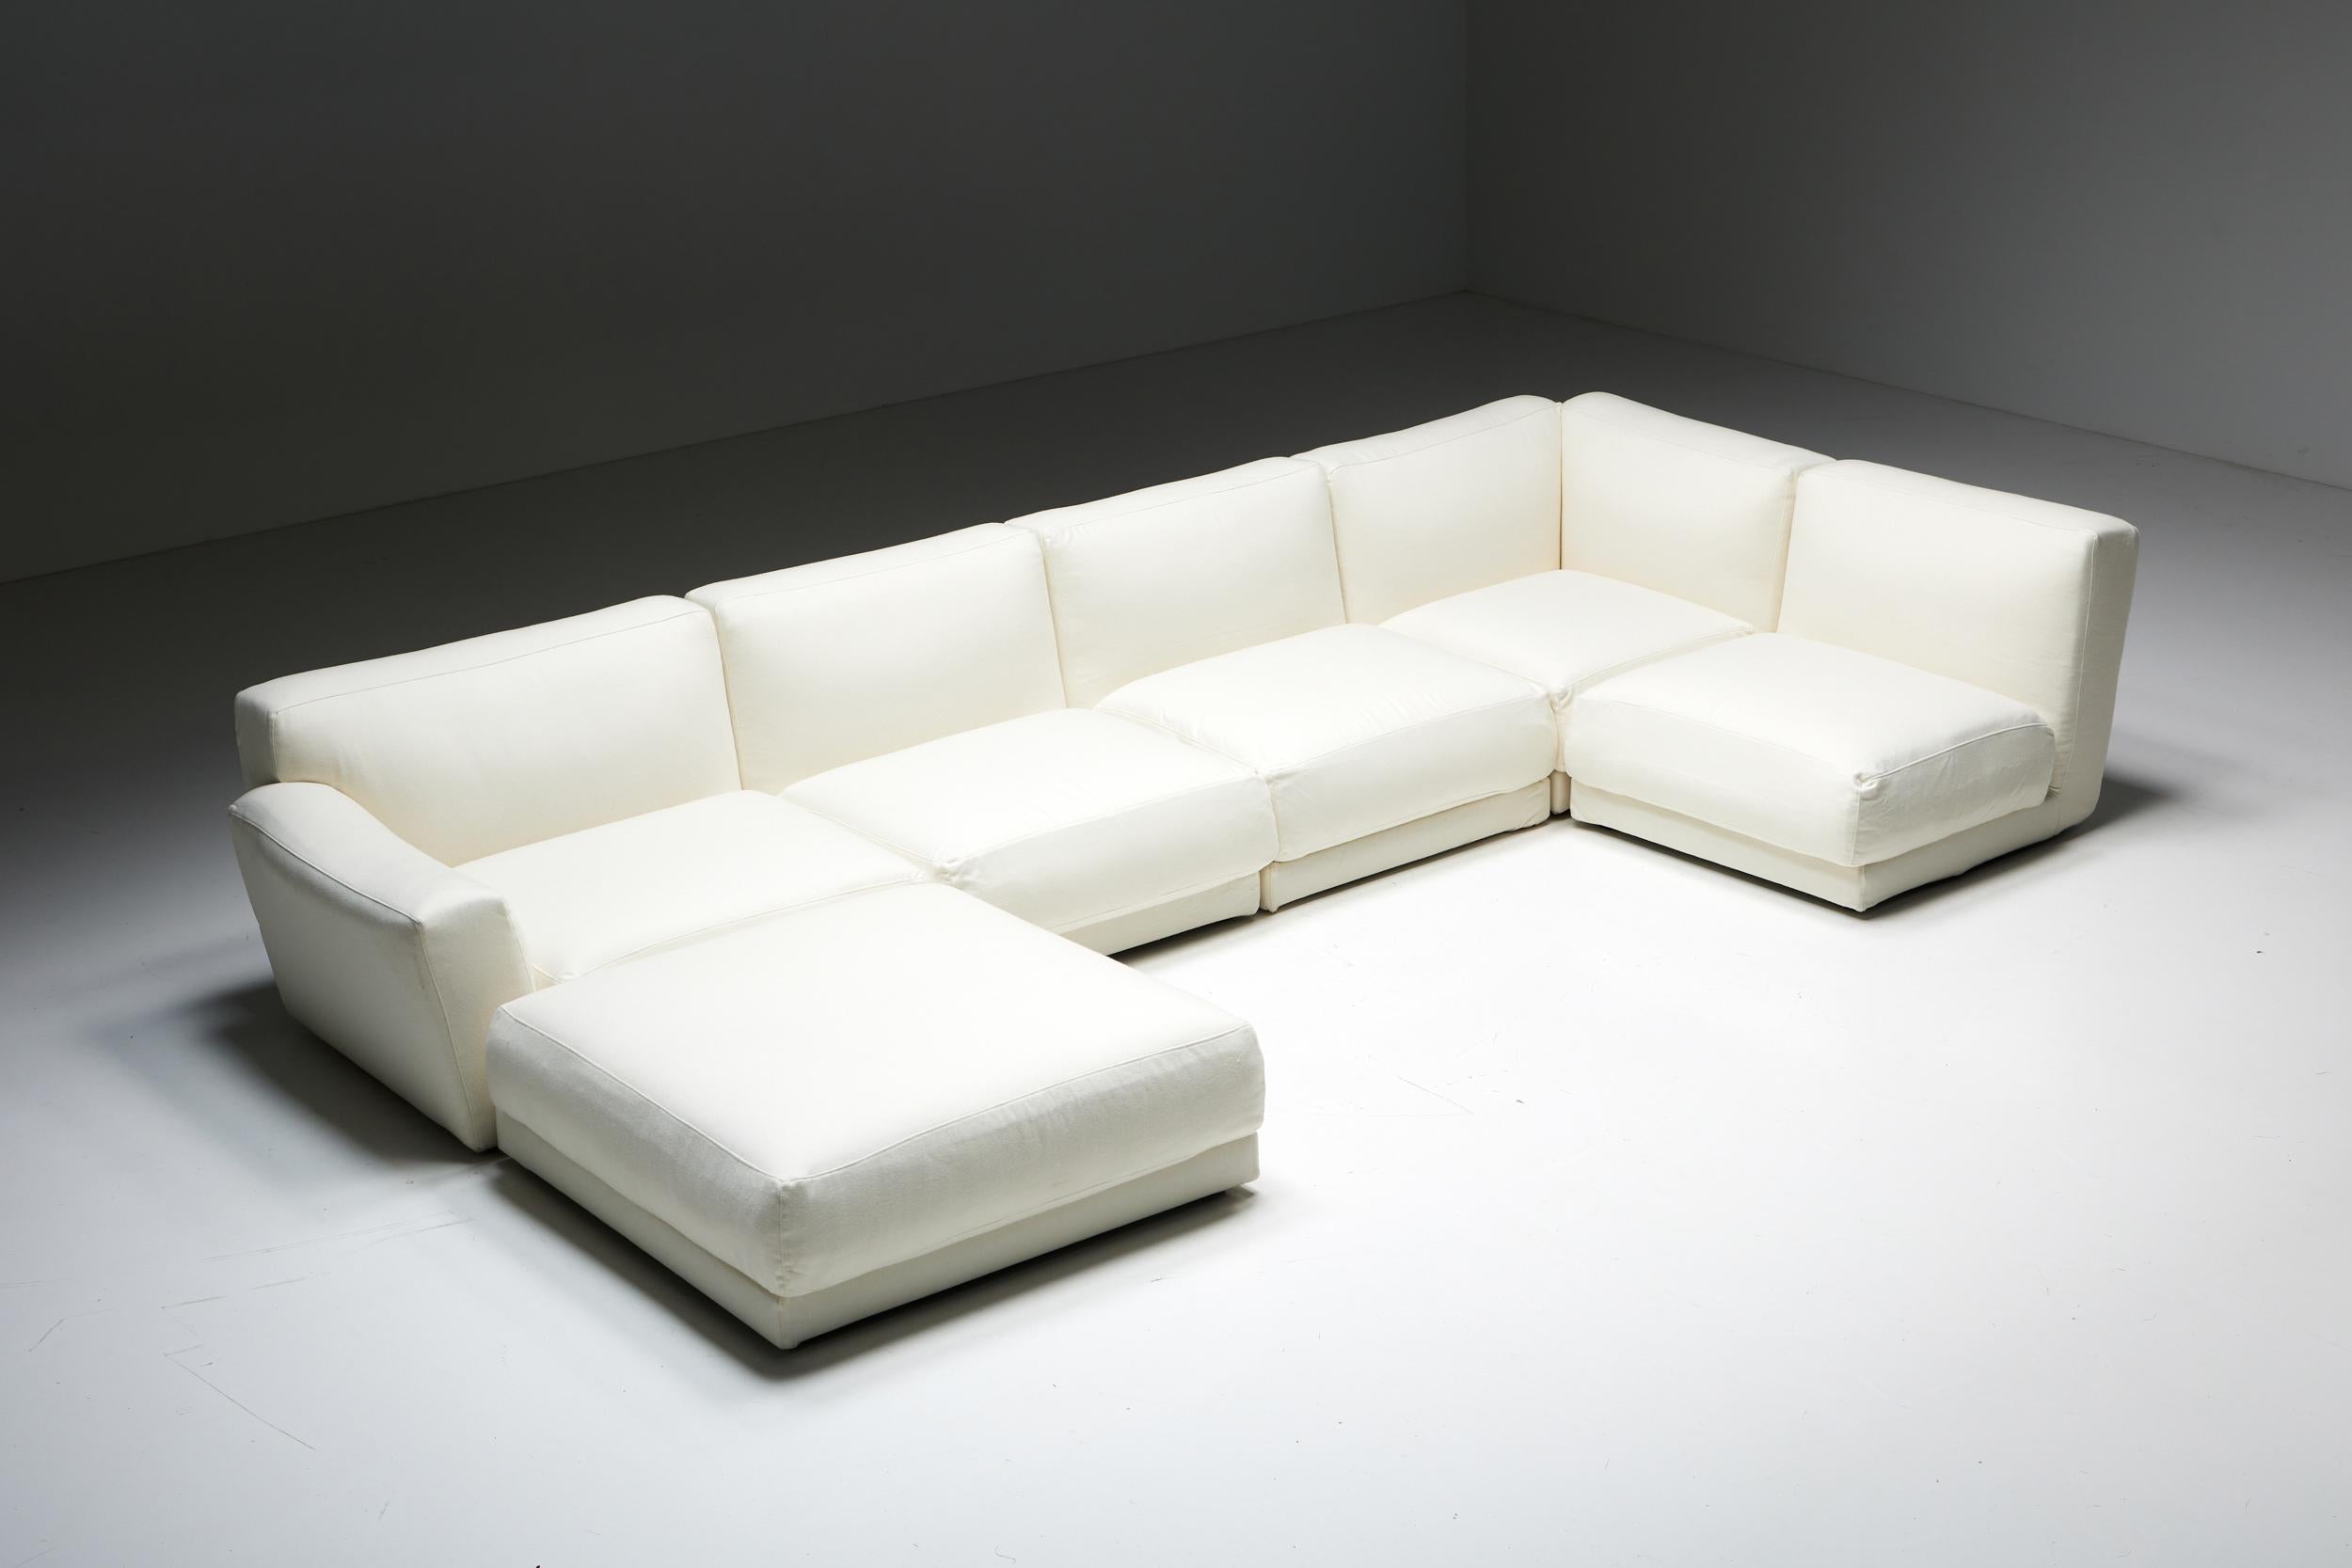 Canapé modulaire ; B&B Italia ; Maxalto ; Luis ; 21ème siècle ; Contemporary Design ; Antonio Citterio ;

Le canapé modulable Luis, conçu par Antonio Citterio pour B&B Italia en 2007, est une pièce luxueuse et polyvalente qui offre un confort et un